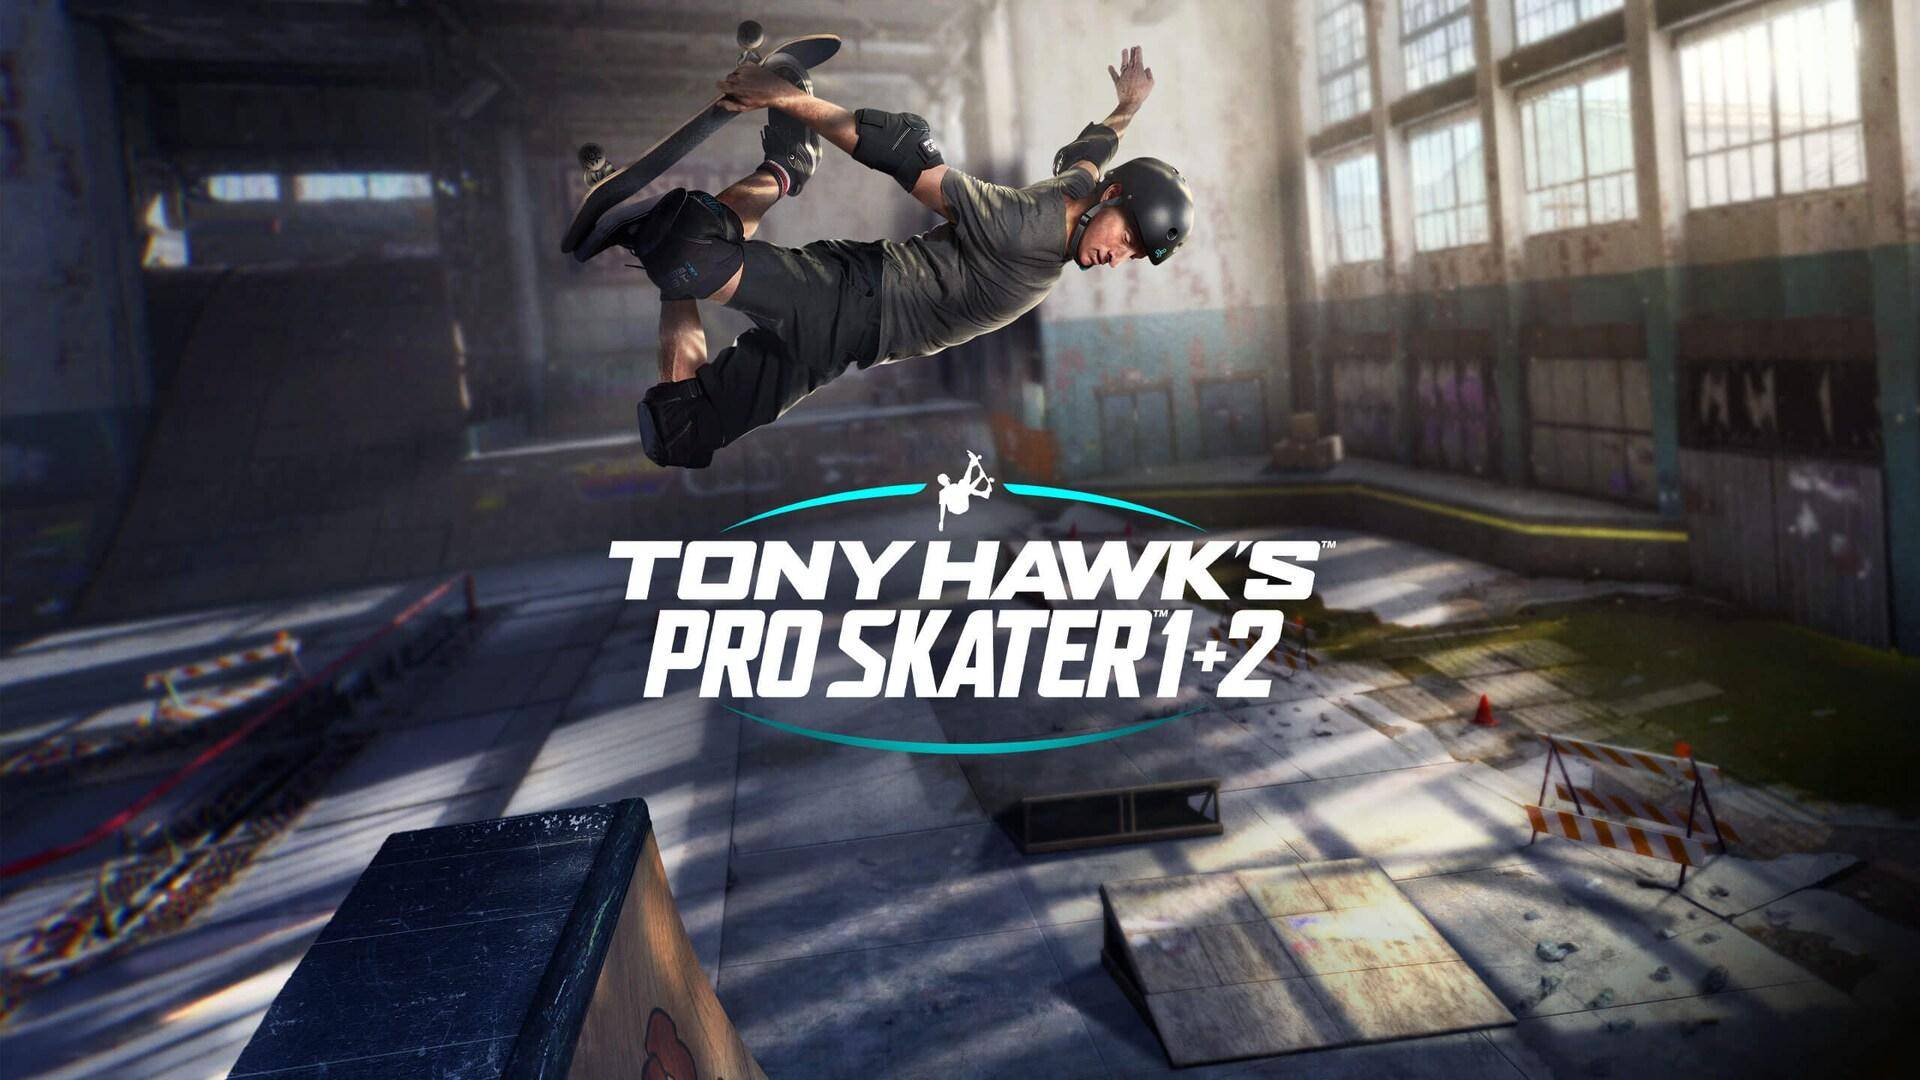 Tony Hawk’s Pro Skater 1+2 propose un essai gratuit